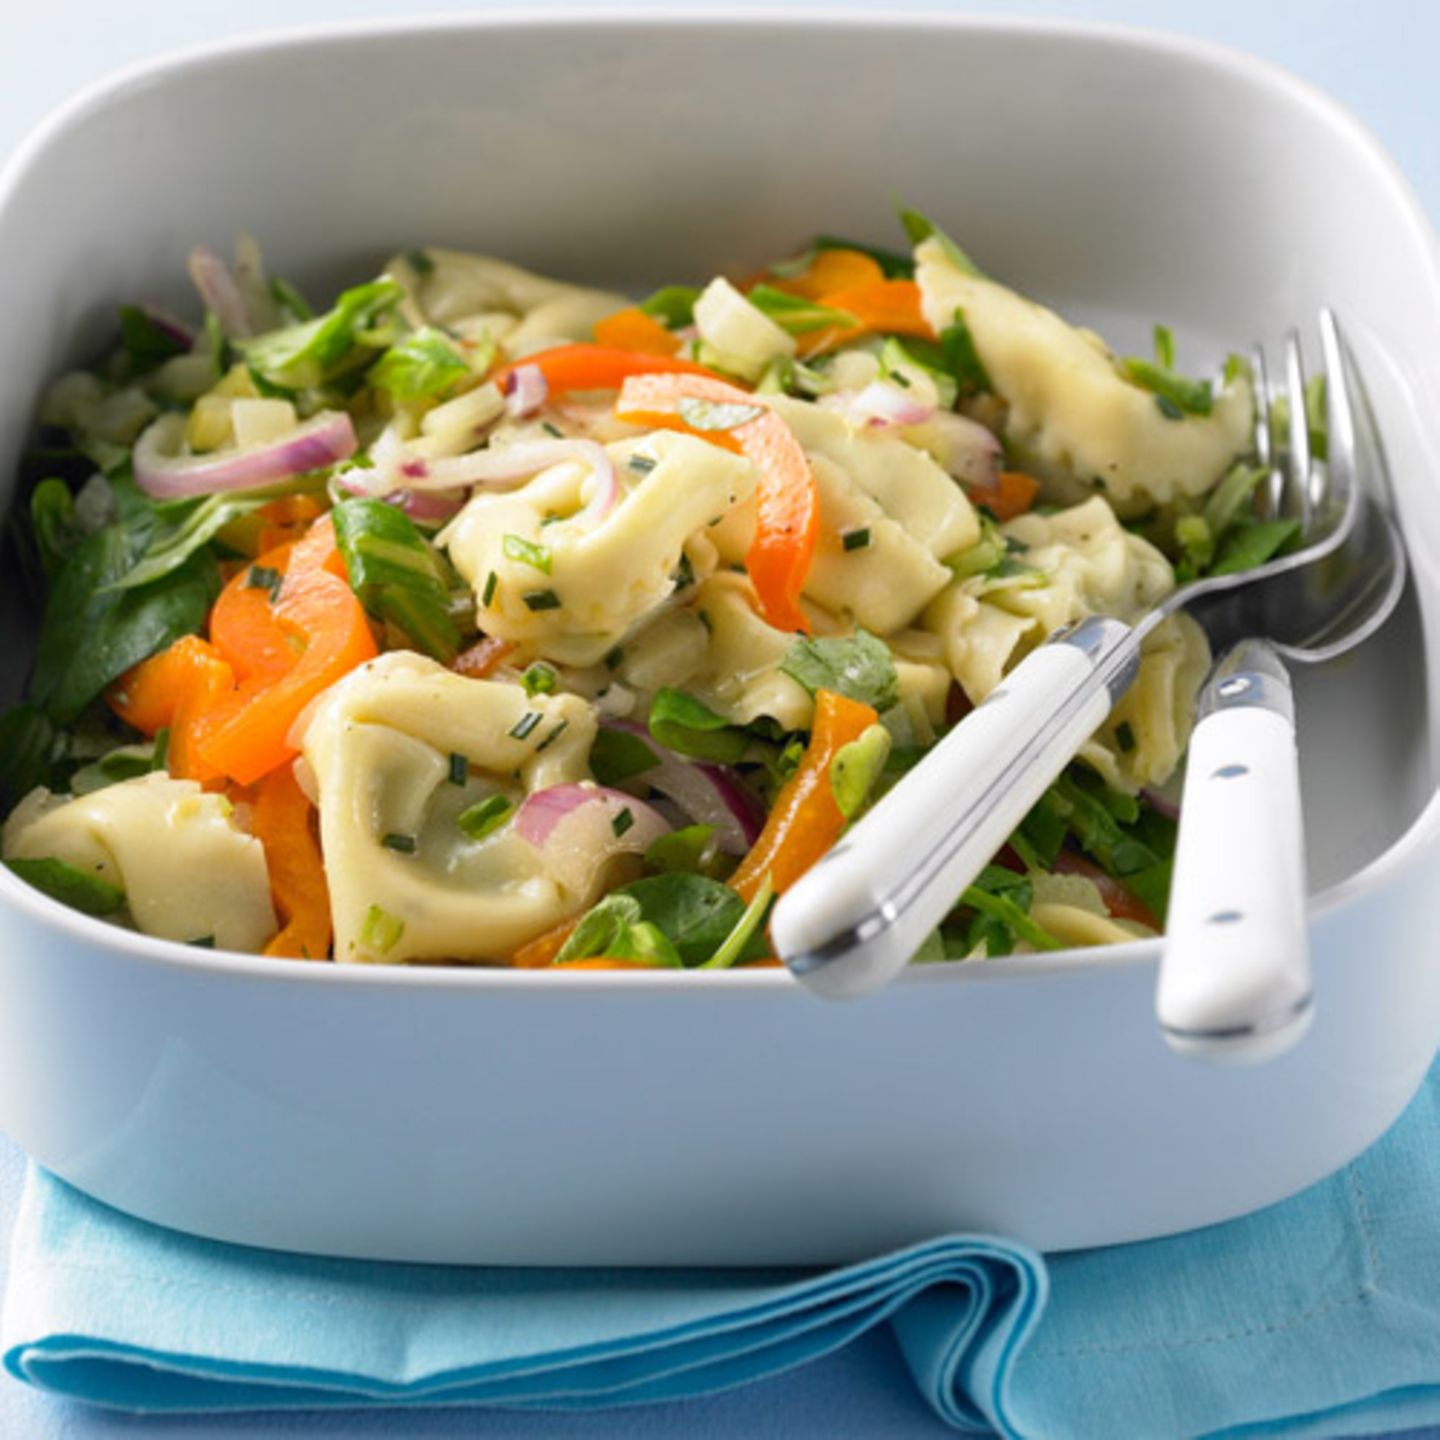 Tortelloni schmecken nicht nur mit Nudelsauce - sondern auch im Salat mit Fenchel, Paprika und Feldsalat. Zum Rezept: Bunter Tortelloni-Salat